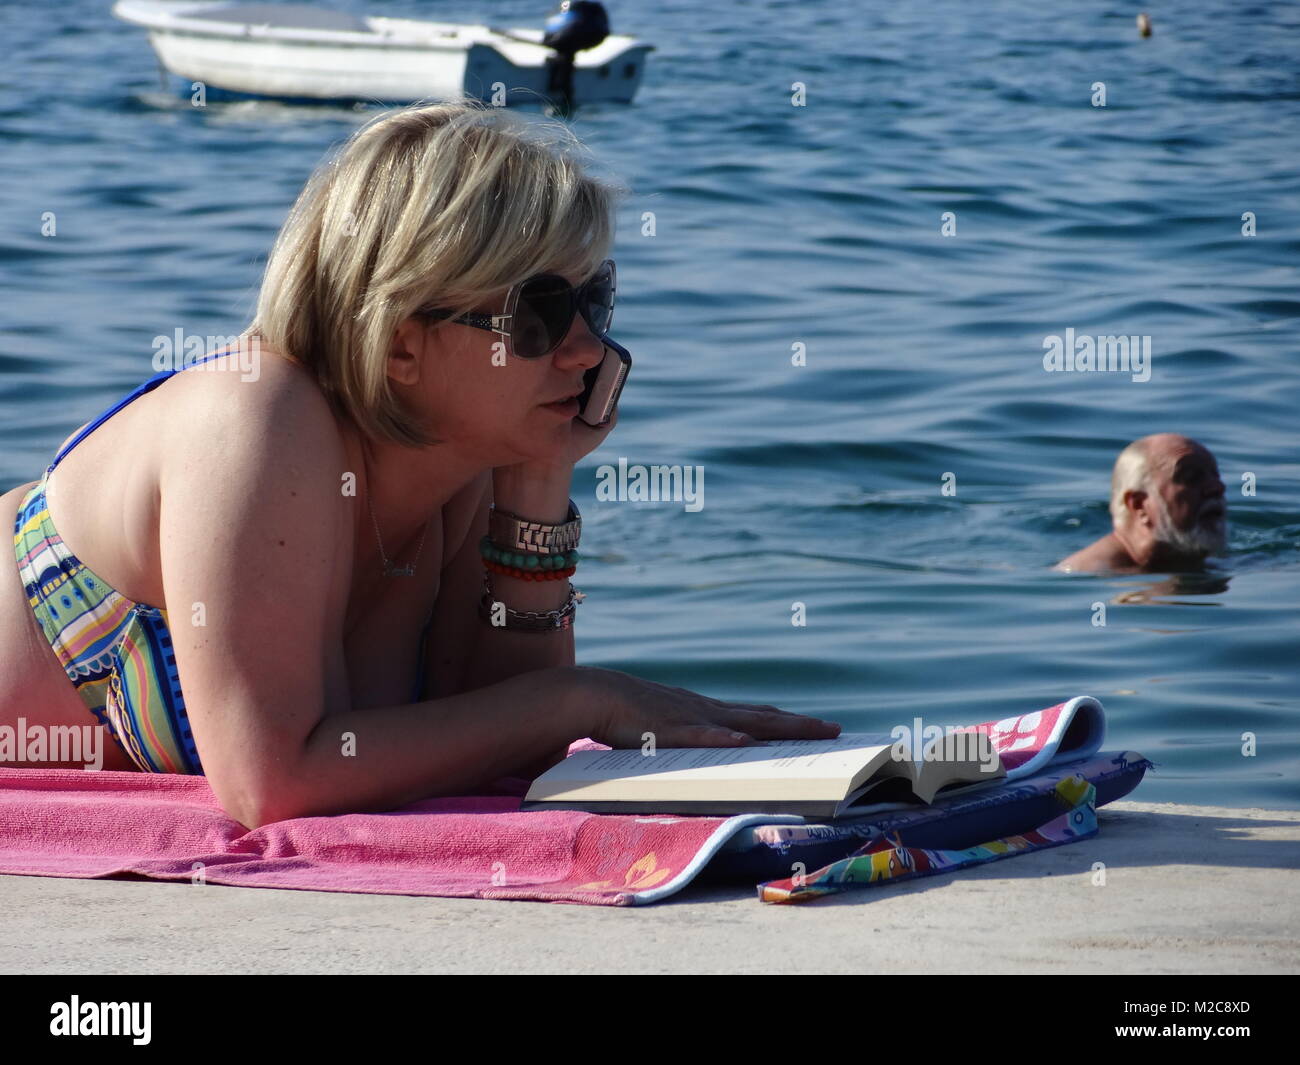 Die Füße hoch legen, Sommer, Sonne und mehr - die Urlauber freuen sich auf die schönsten Zeit des Jahres. Eine Frau liest ein Buch und telefoniert am Strand. Telefonieren in der EU ist seit dem 1. Juli 2013 billiger.  Eine Frau telefoniert mit dem Handy am Strand /Beach. Stock Photo